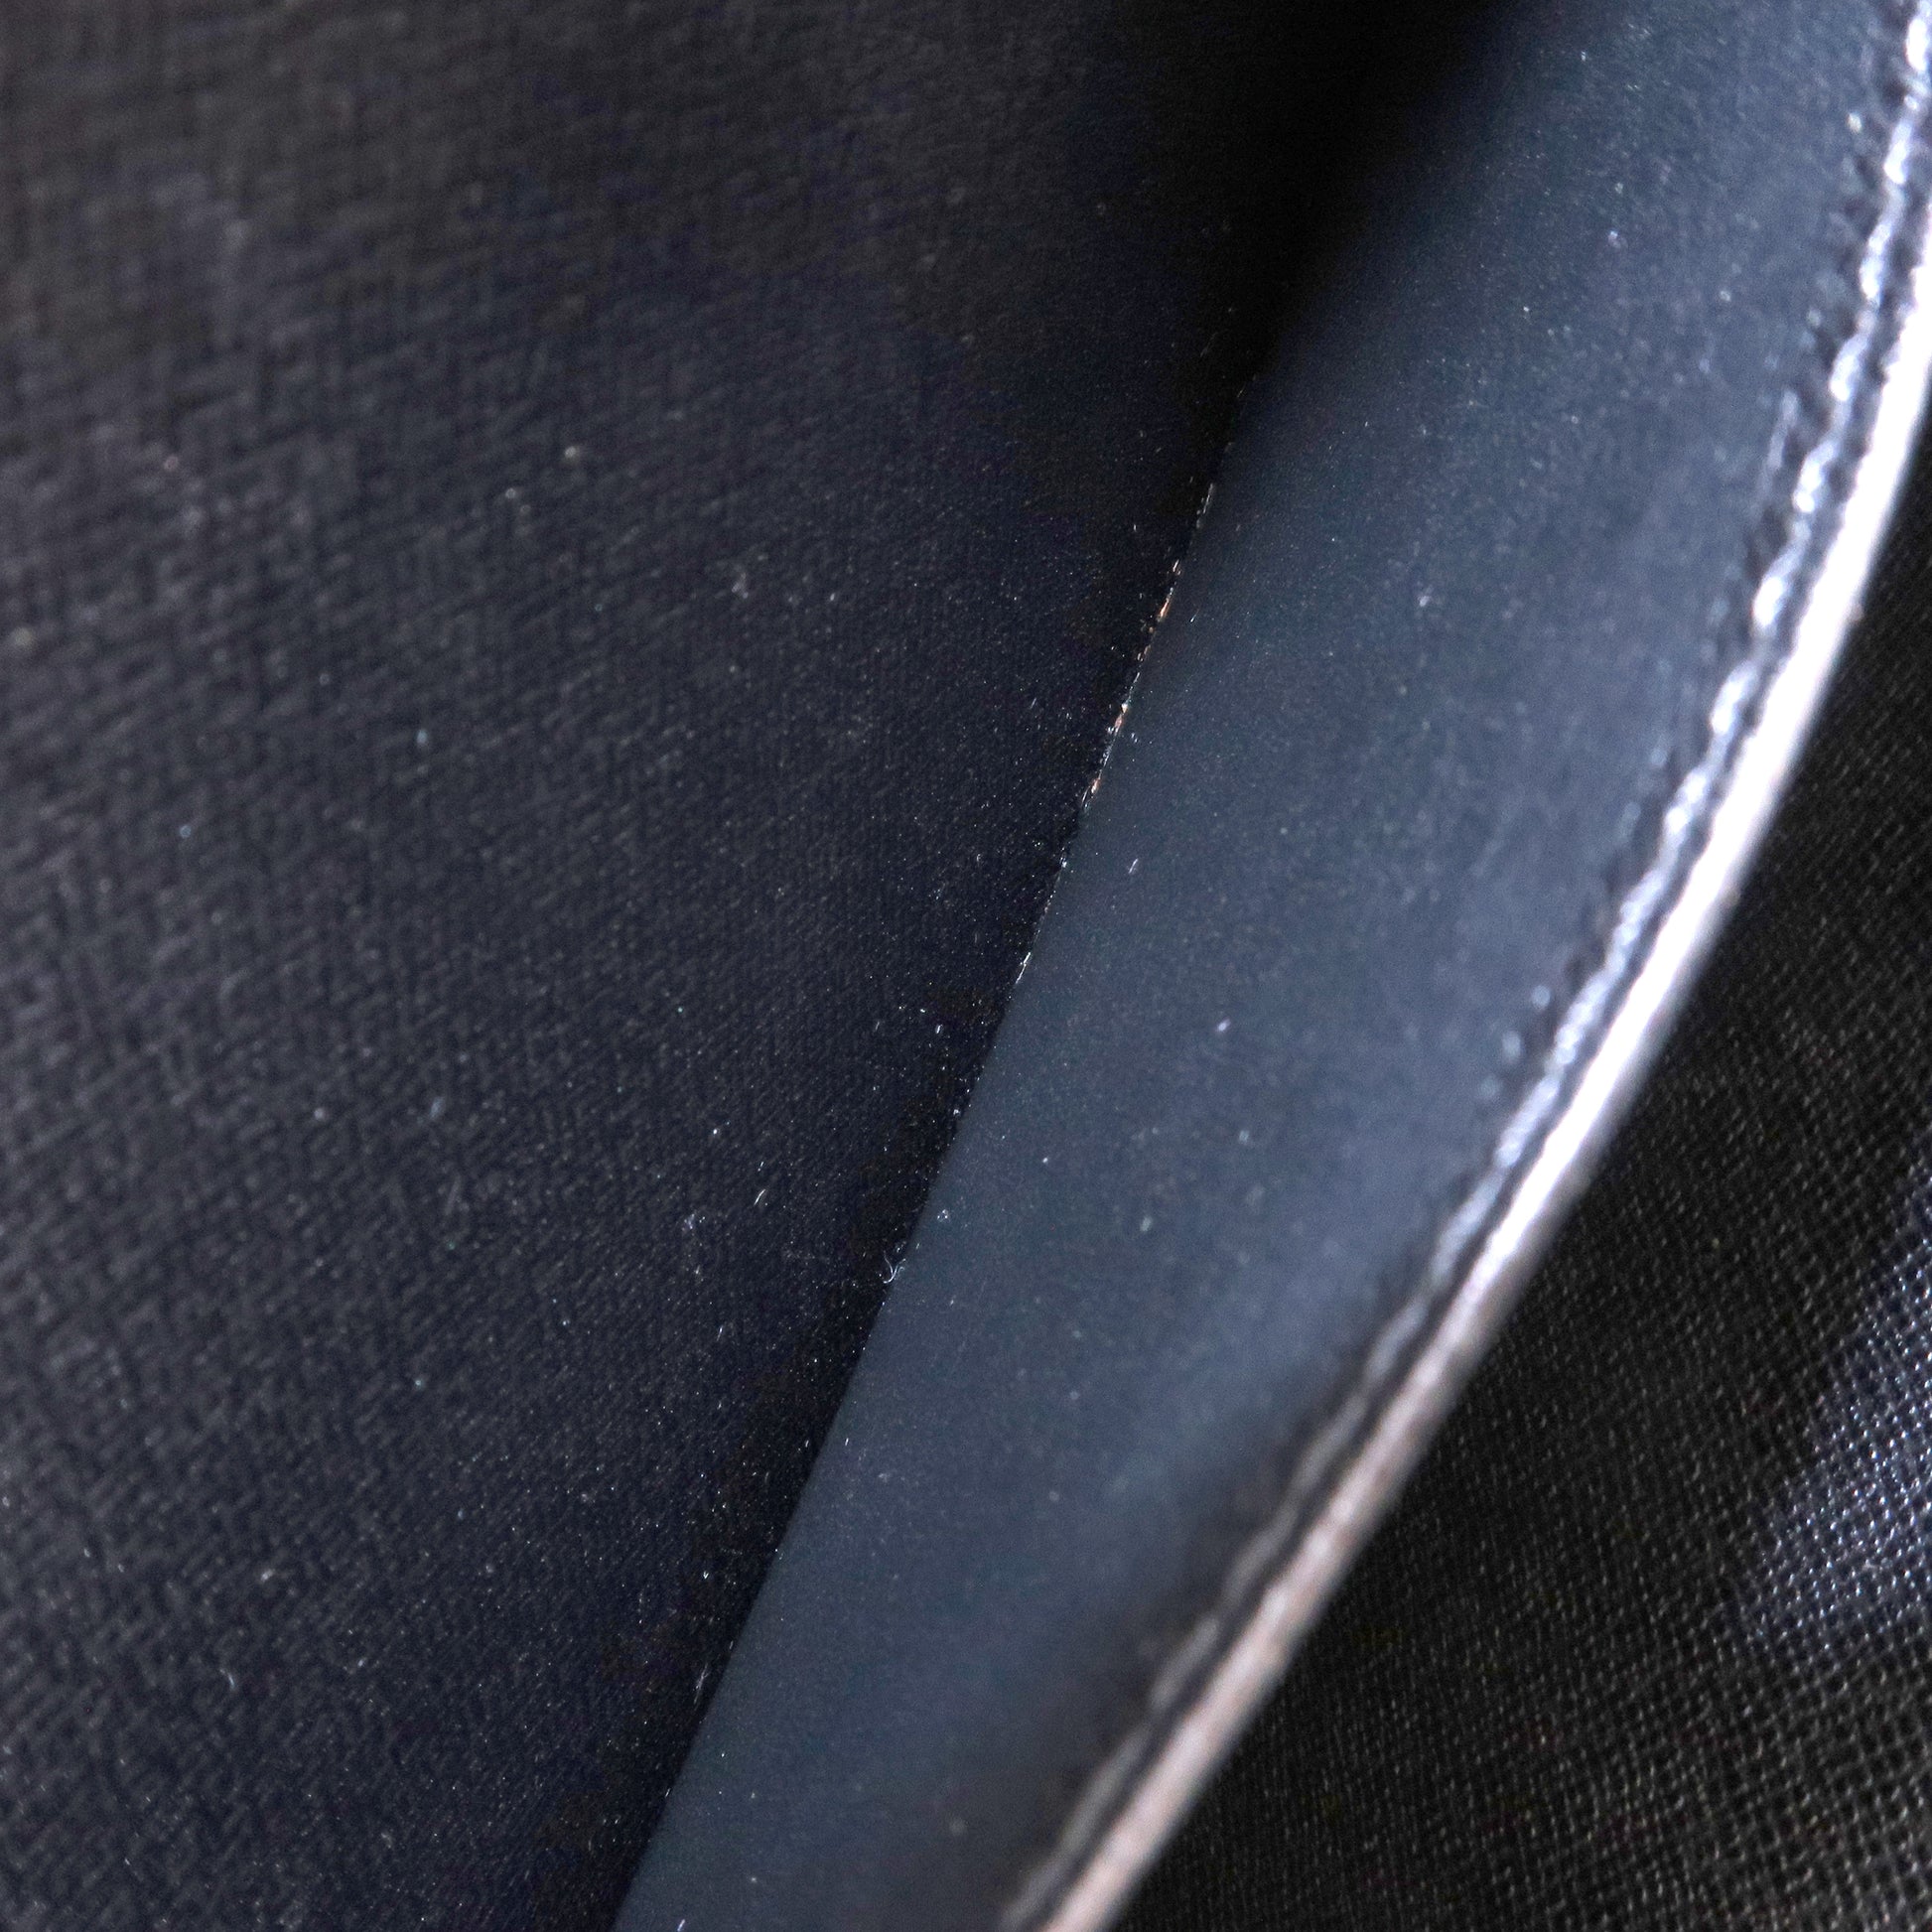 LOUIS VUITTON Pochette Homme Epi Leather Black Clutch Bag LP4039